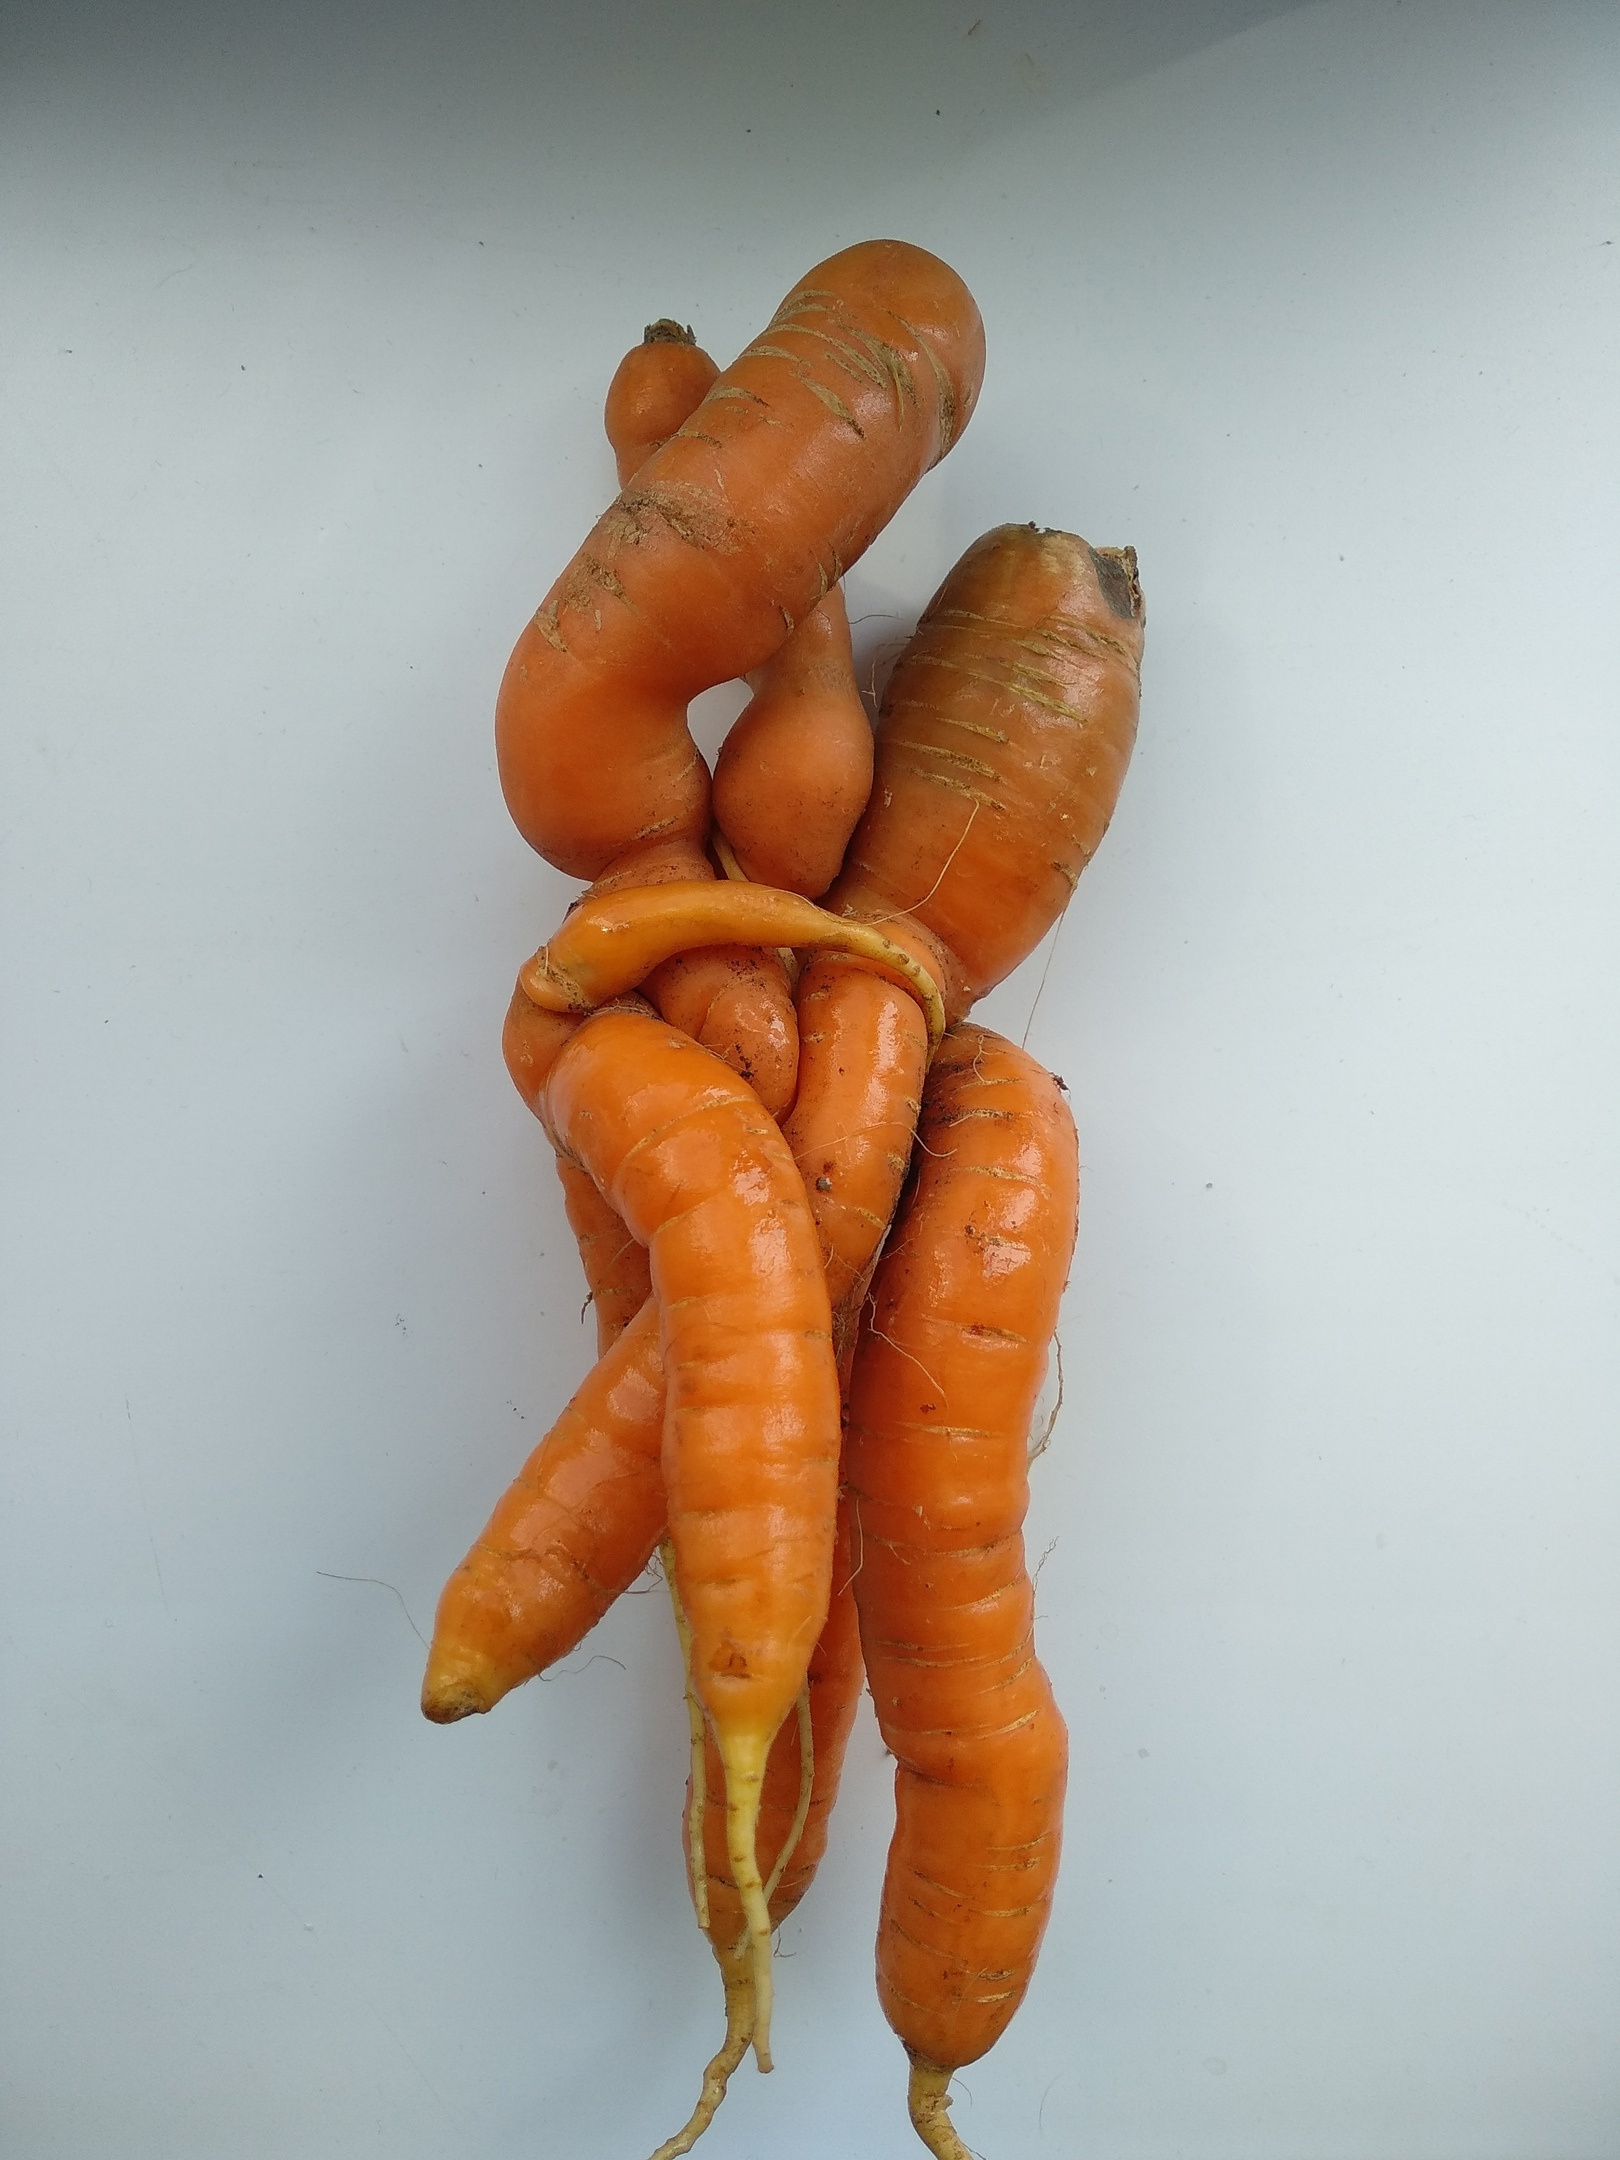 Свежий урожай моркови. Вам на что она похожа? Нам — на сплетение змей